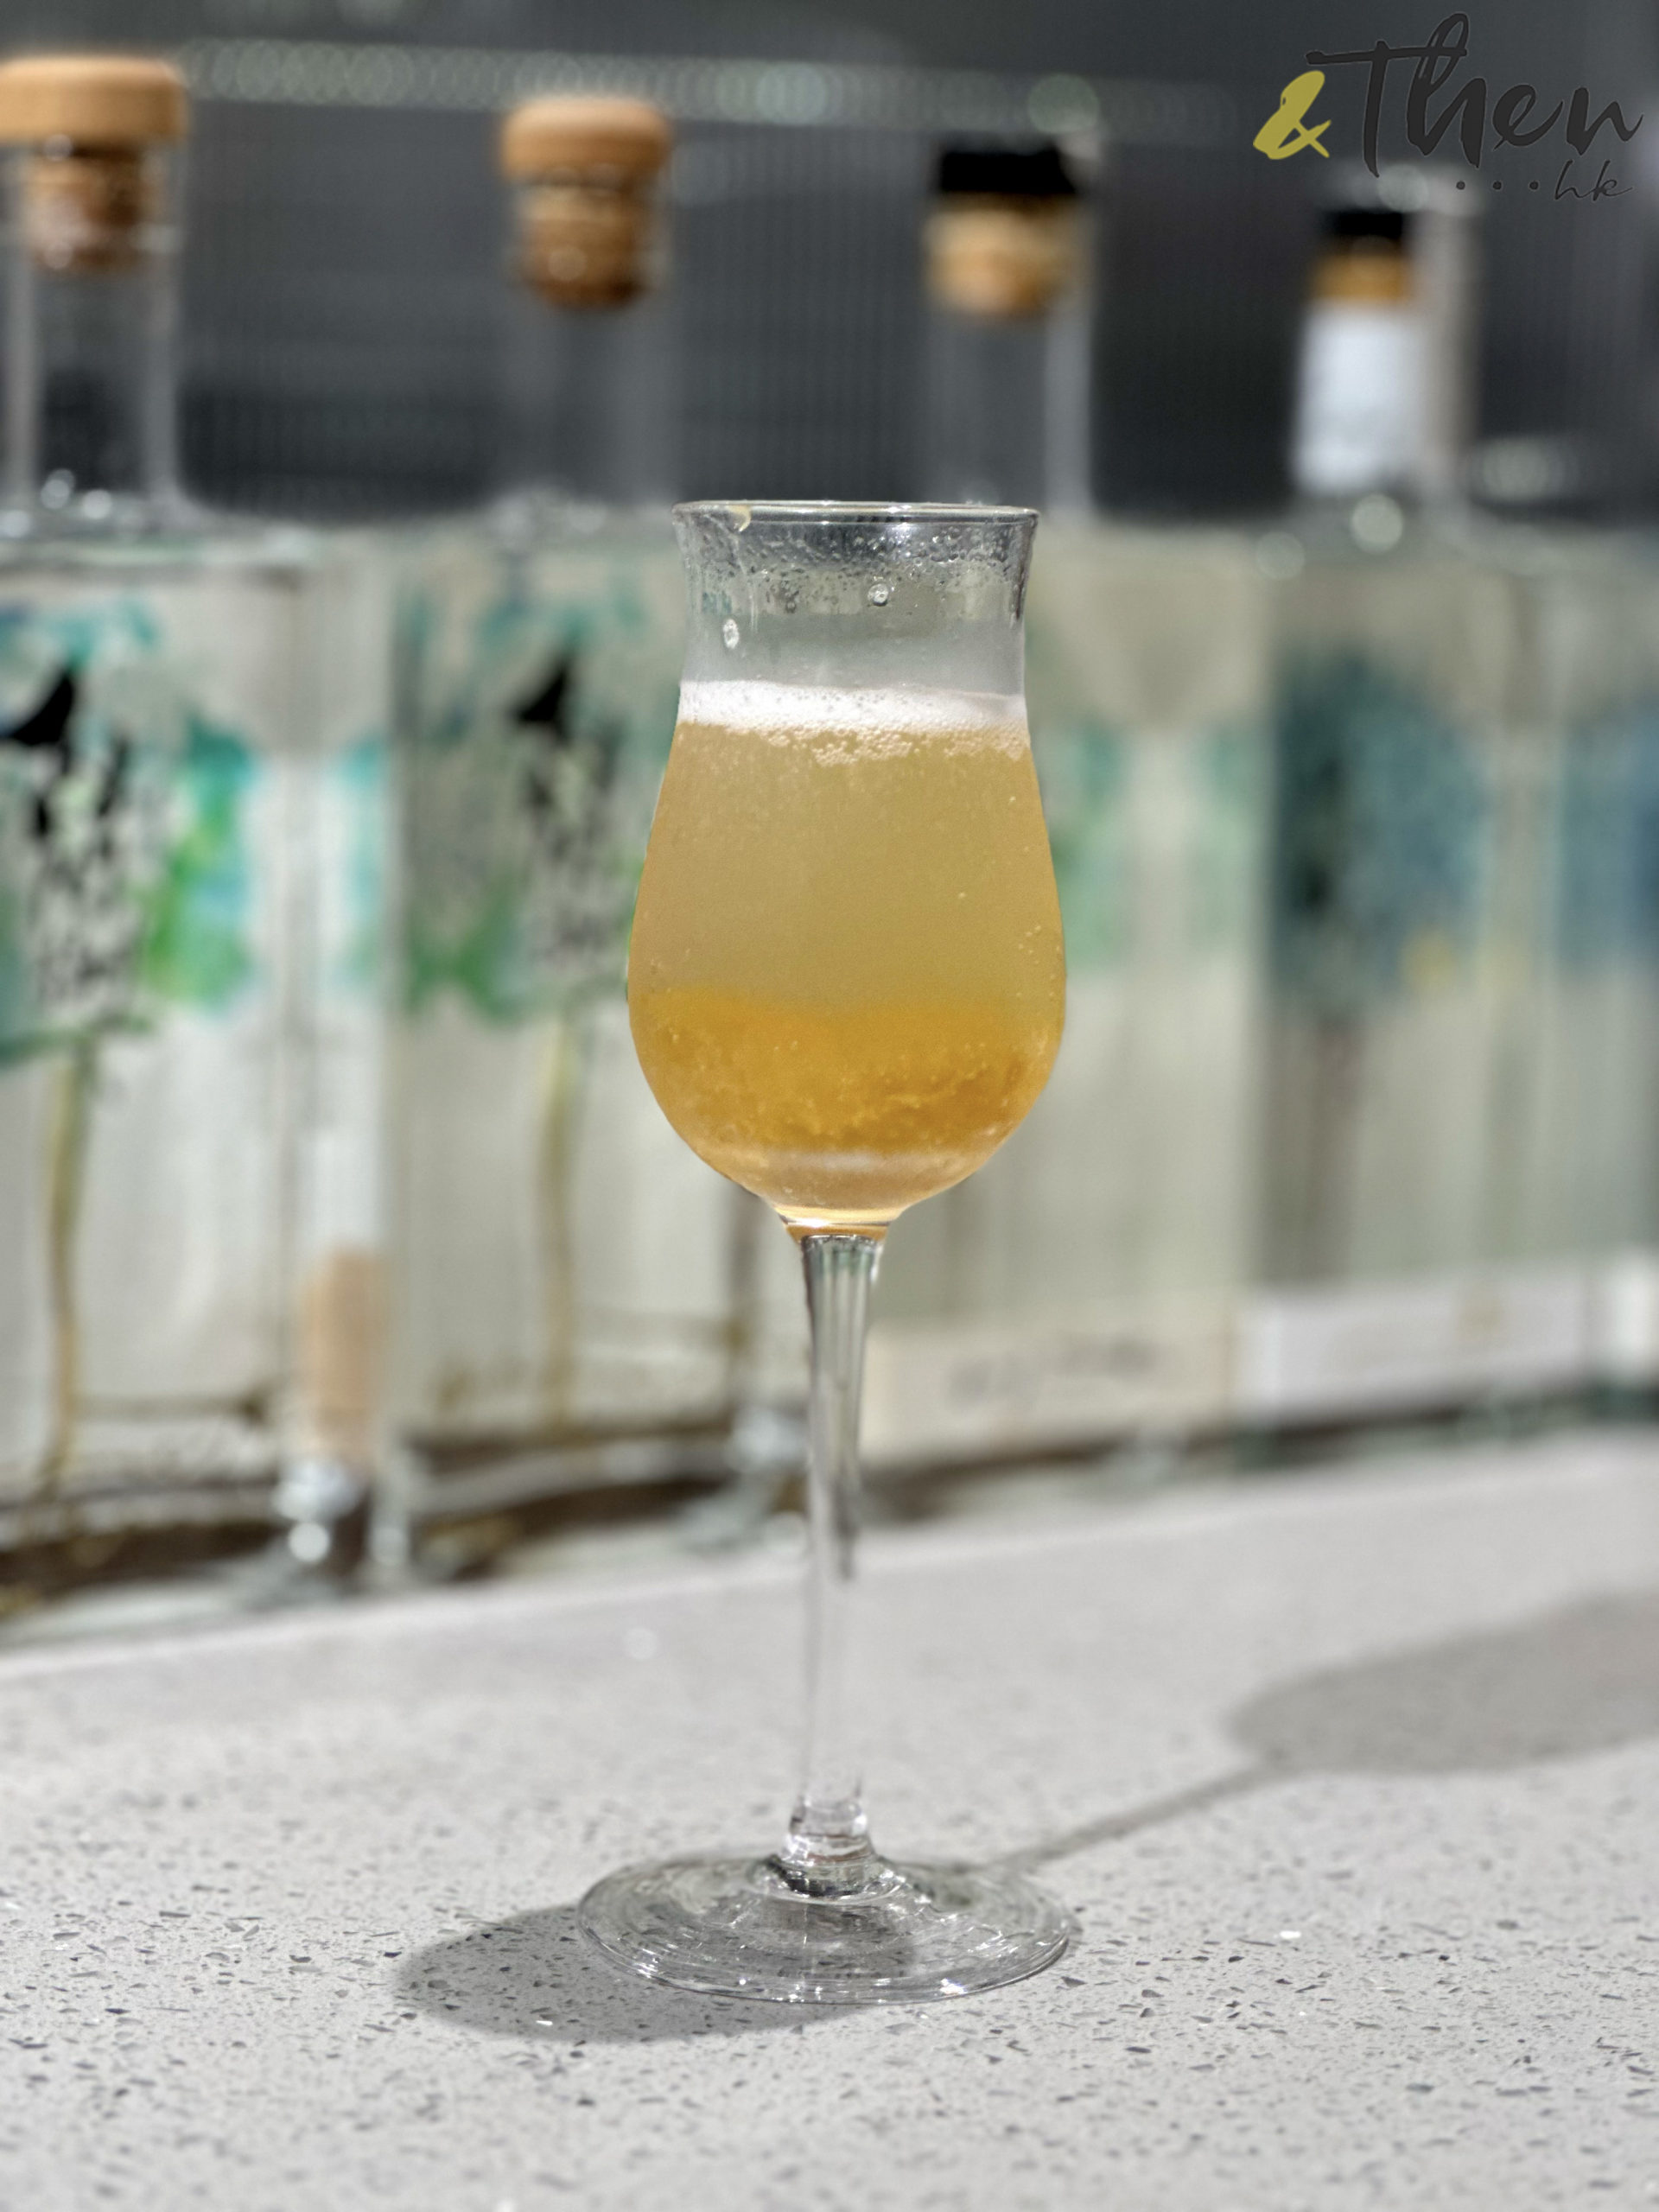 白蘭樹下 氣泡蜂蜜梅酒 二次發酵 港產香檳 南高梅果醬 Bellinis 雞尾酒